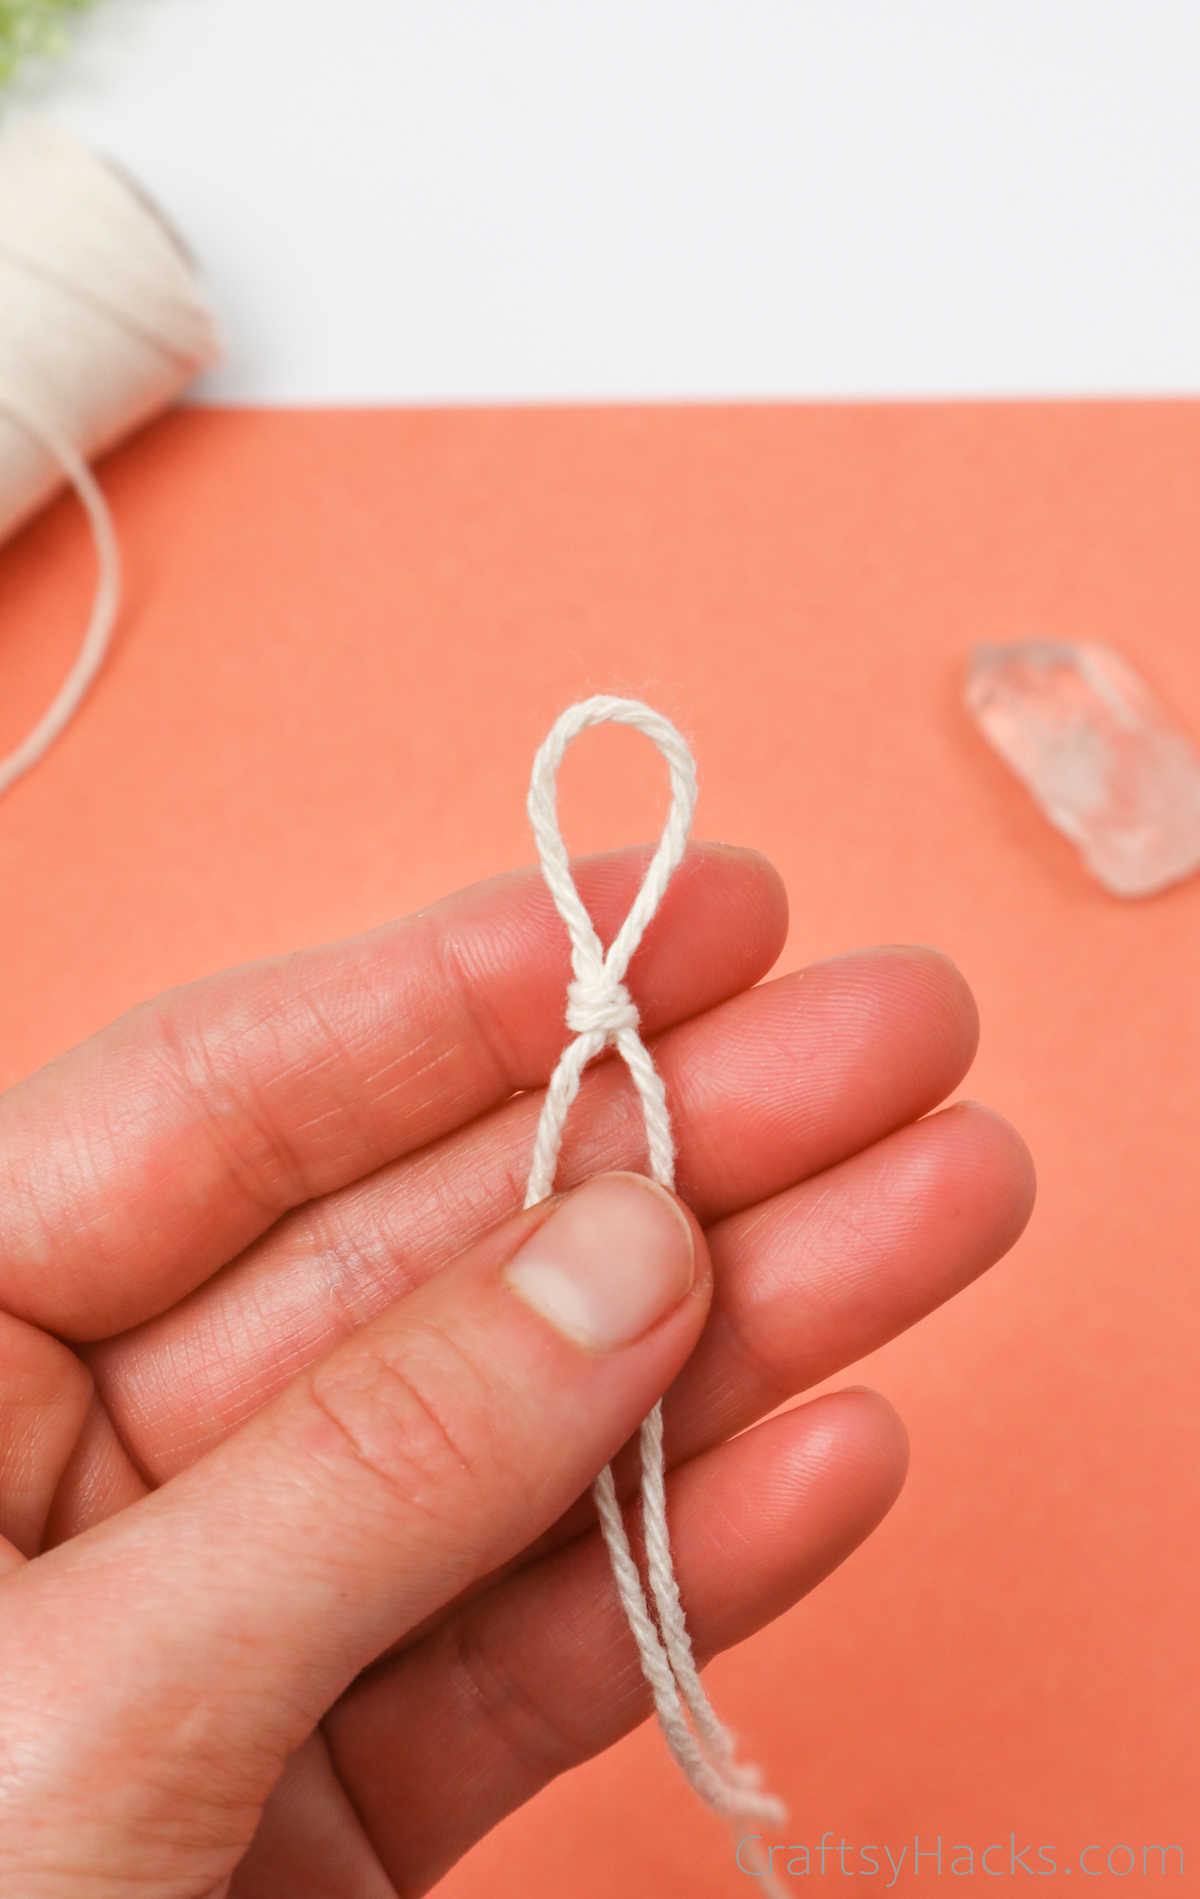 knot in string loop